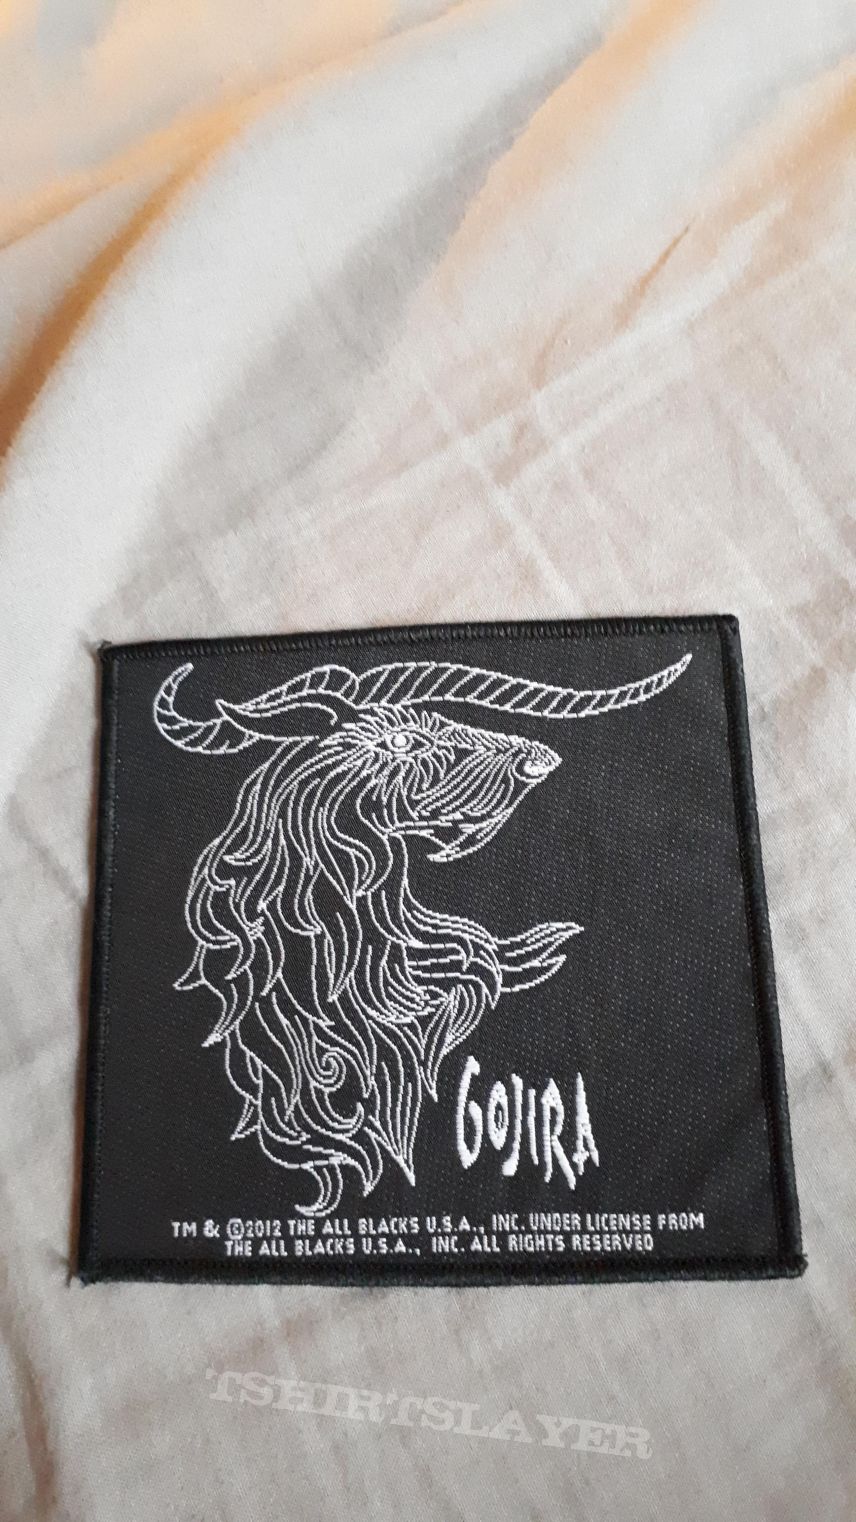 Gojira patch